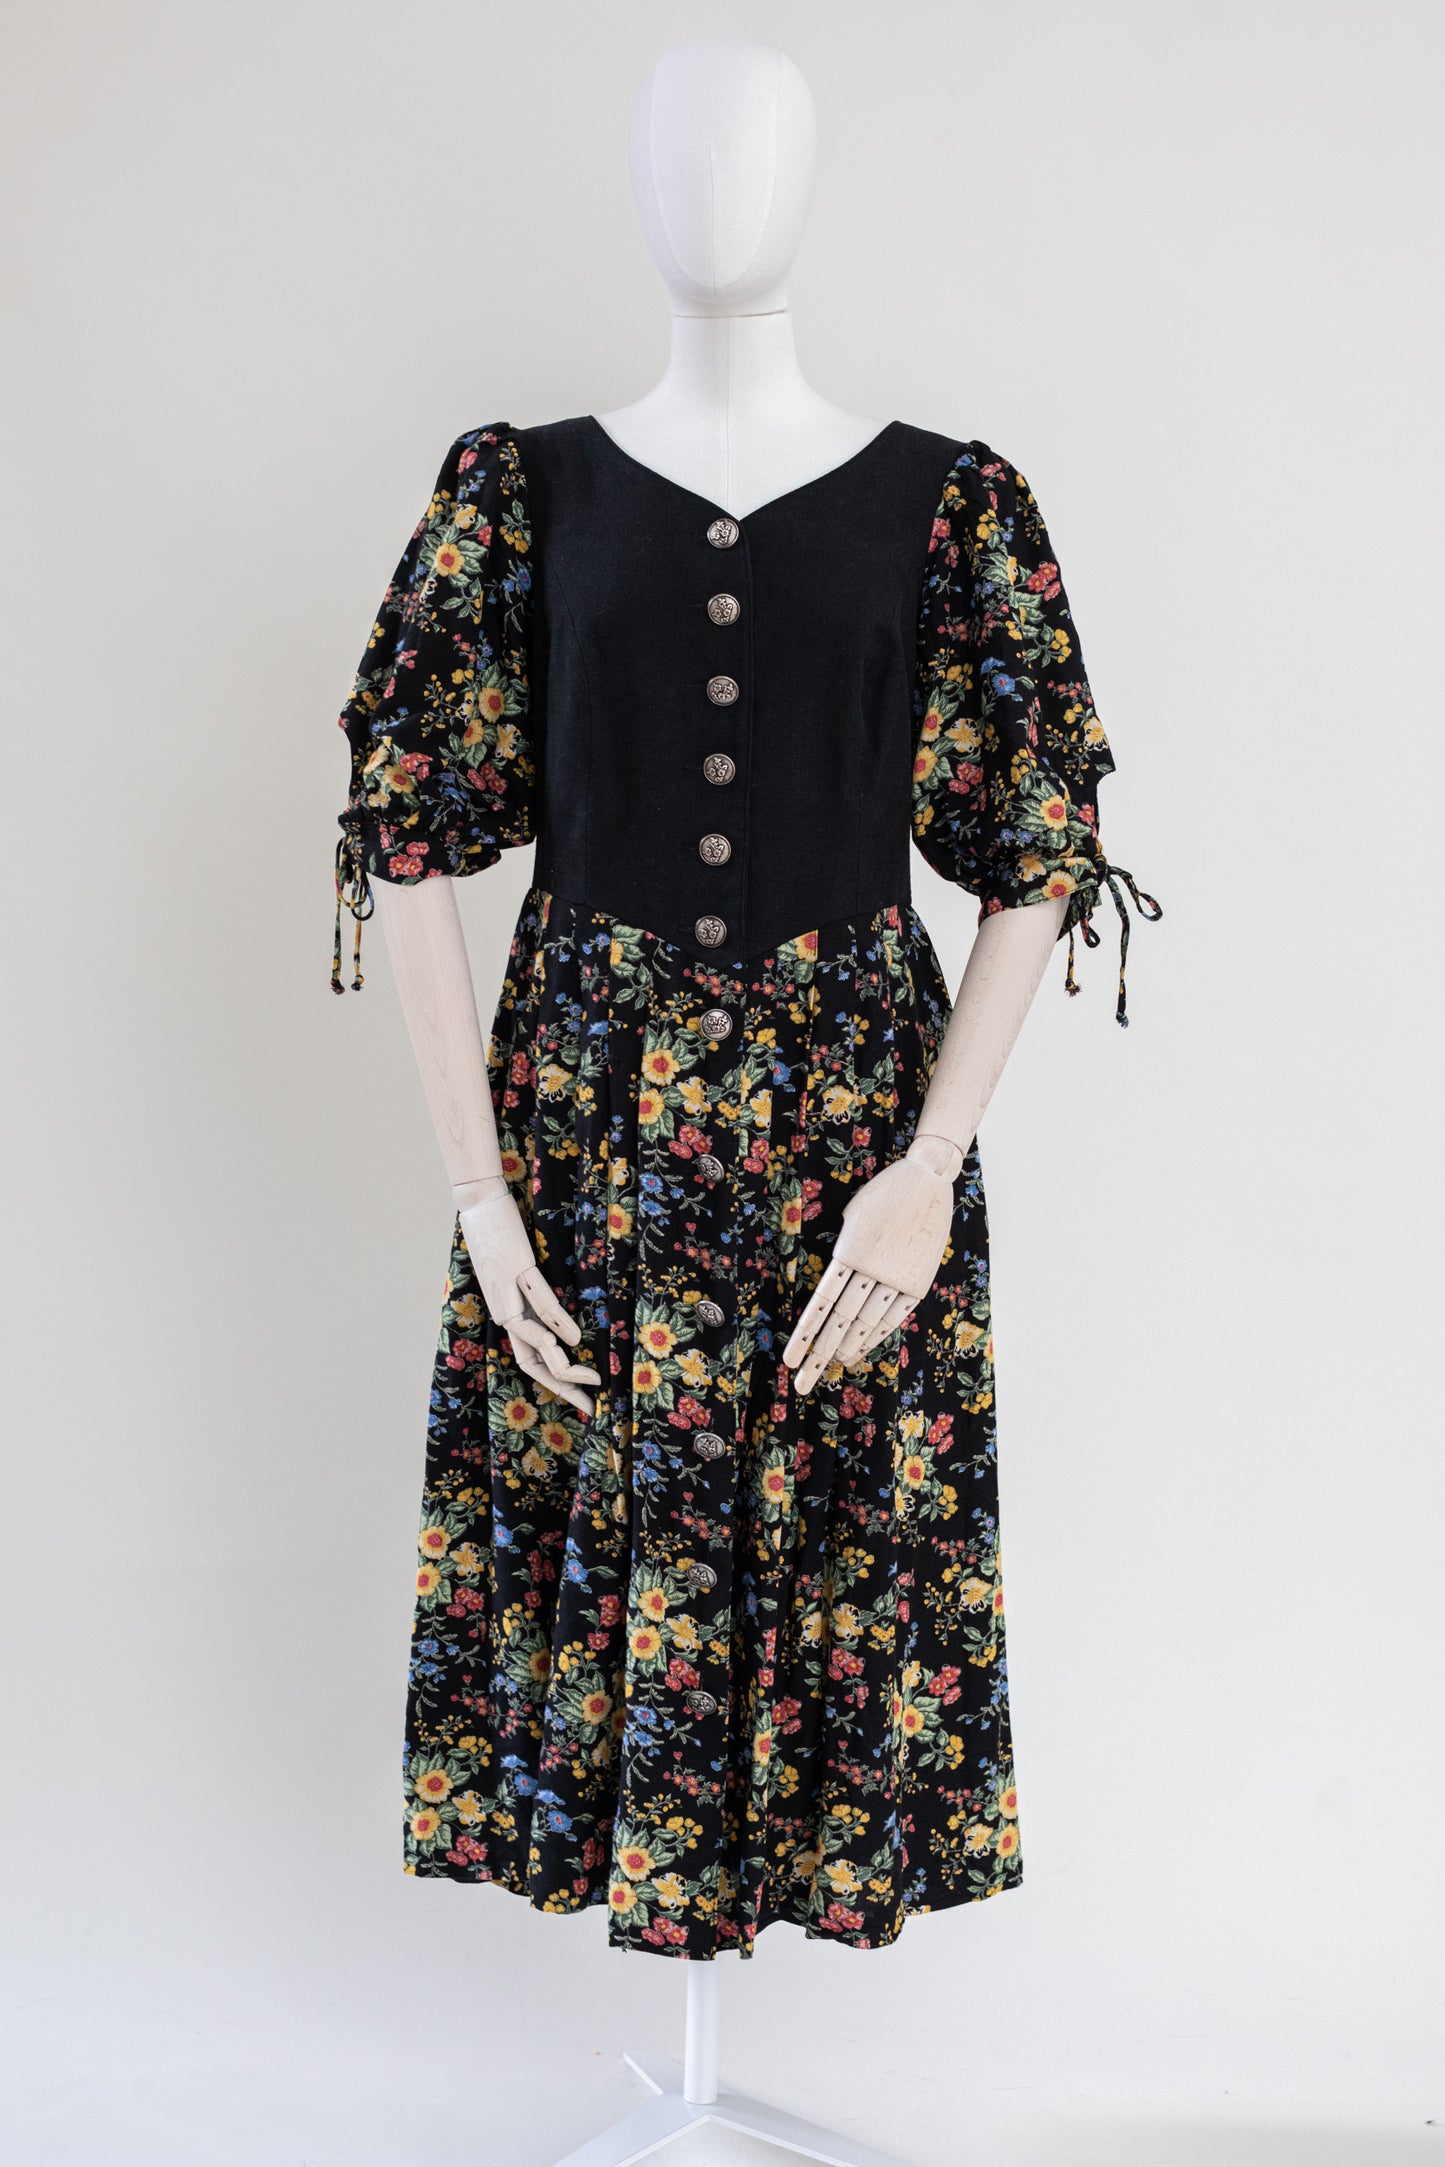 1980's Vintage Austrian Black Linen Dress with Floral Pattern - Size M-L